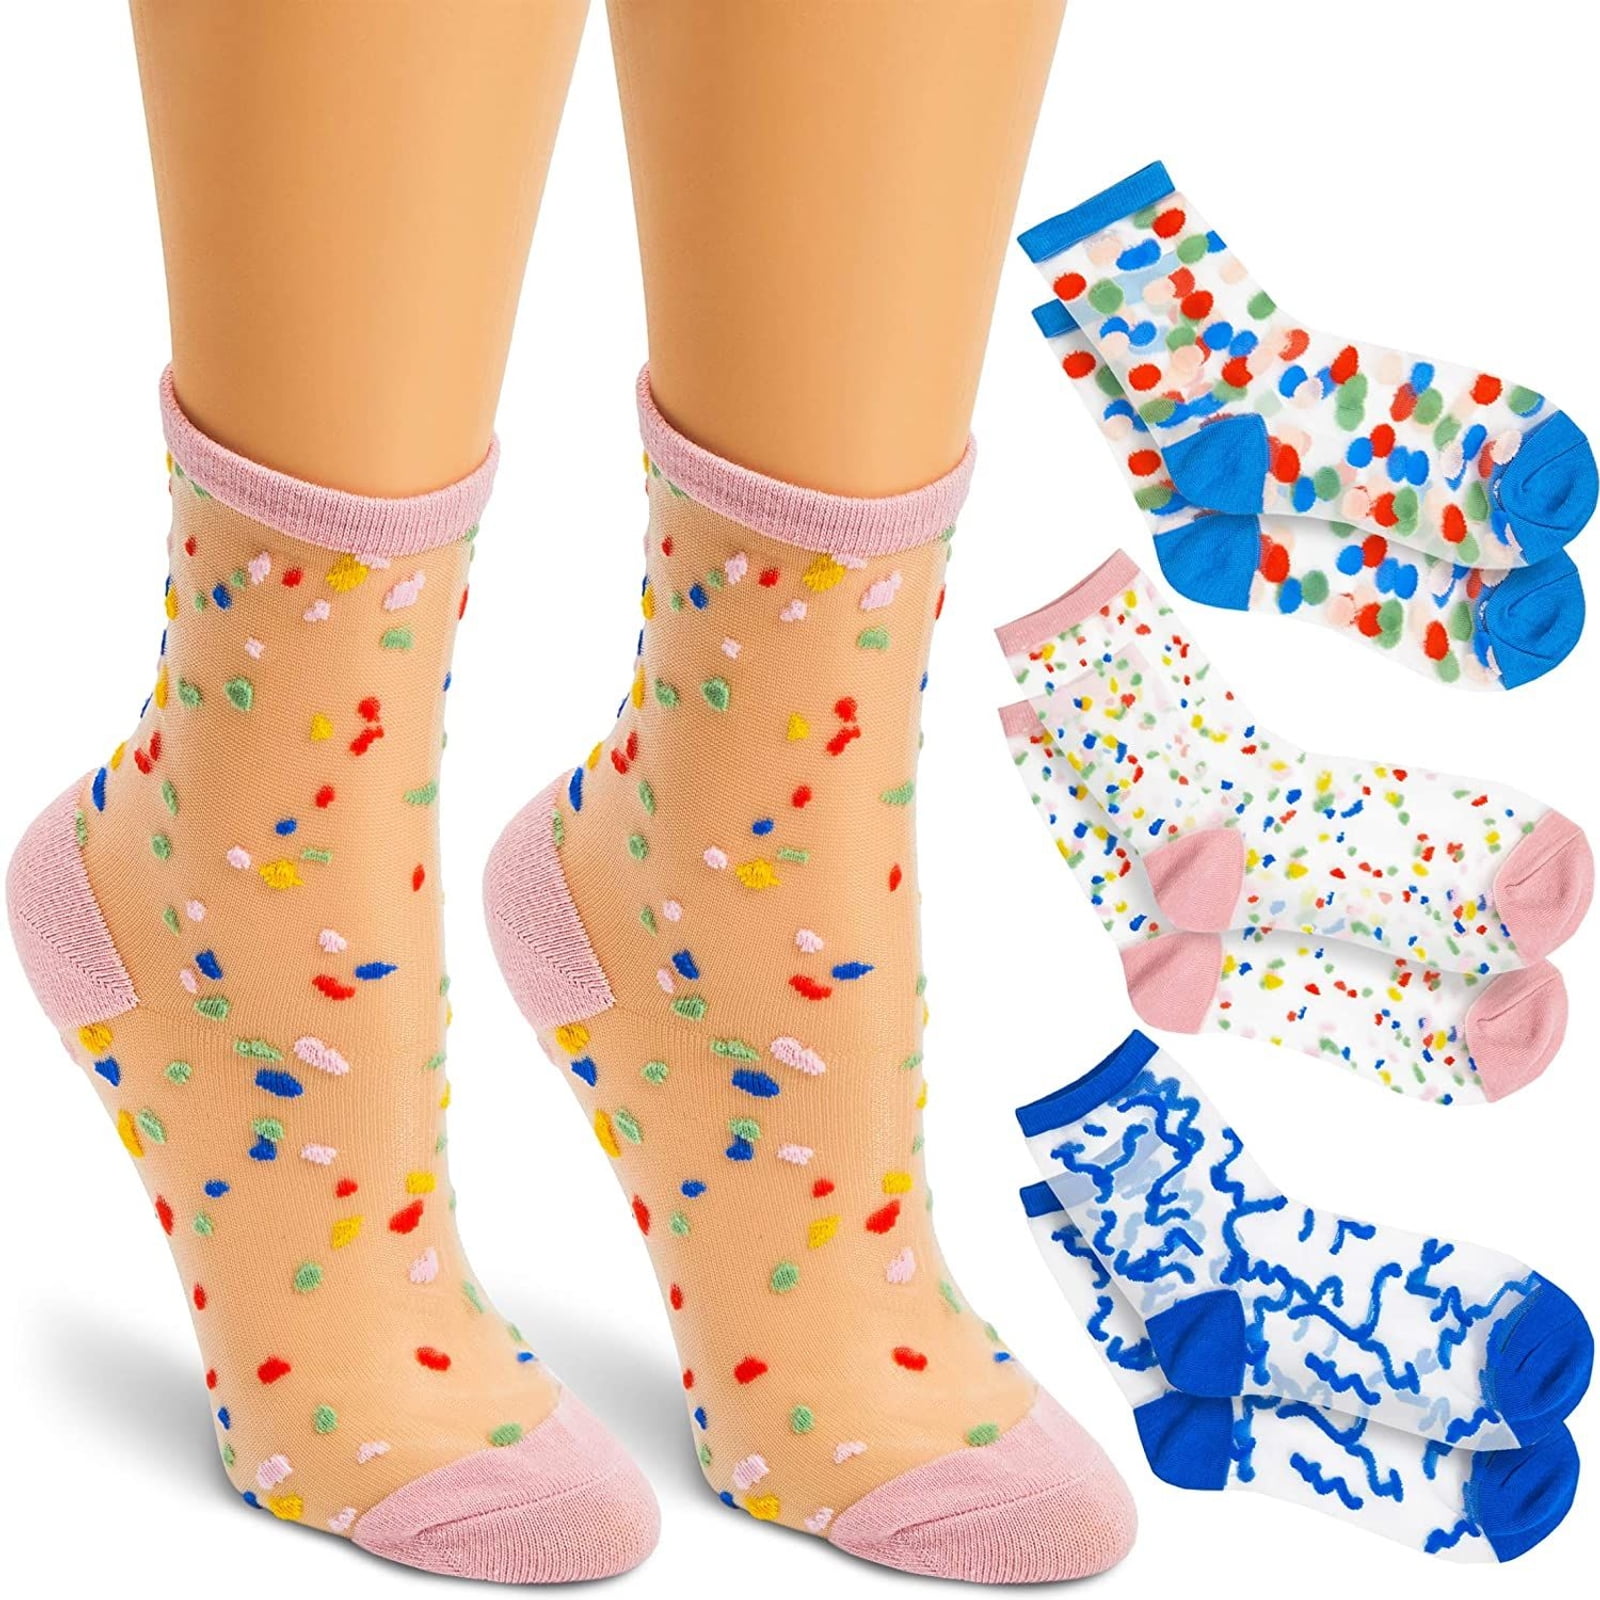 Mesh Net Socks Women's Ankle Socks Breathable Mesh Lady Girl Soft 5Pairs/set C